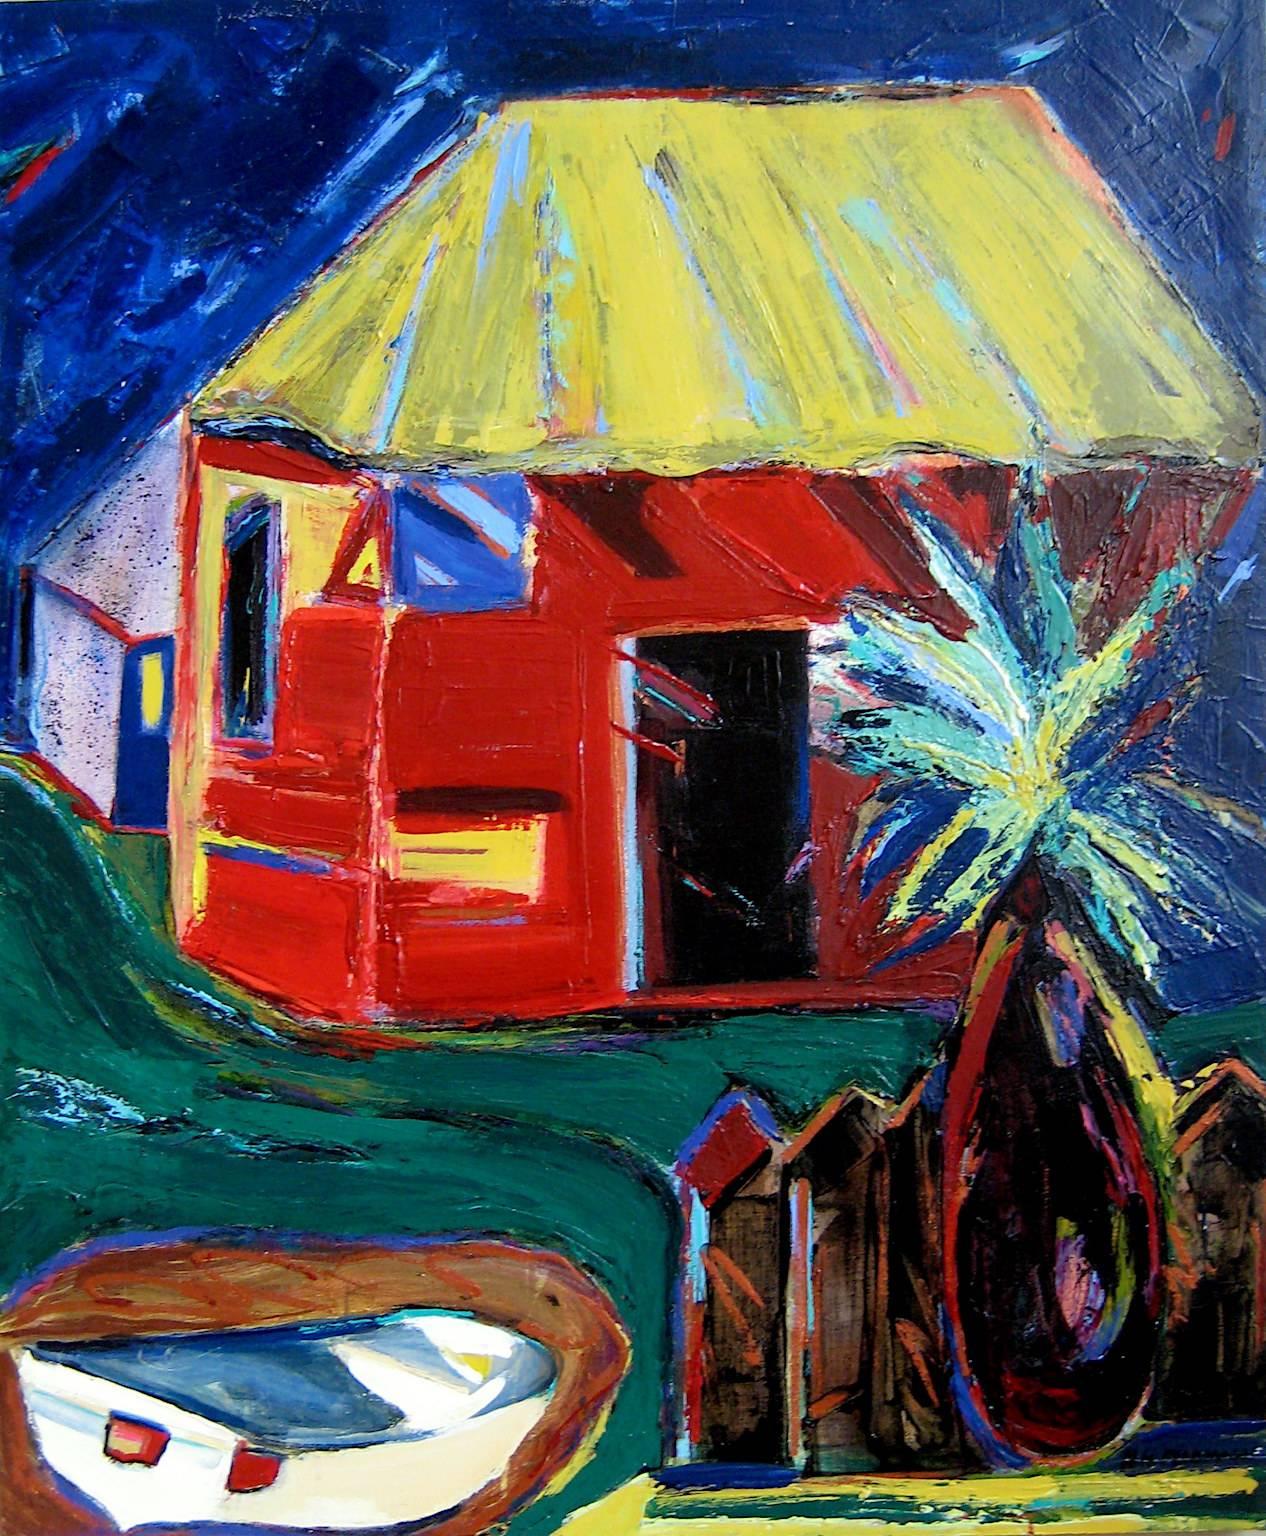 Nan Hass Feldman Landscape Painting – "The Red House", Landschaft, Baum, Boot, Himmel, gelb, blau, Acrylmalerei